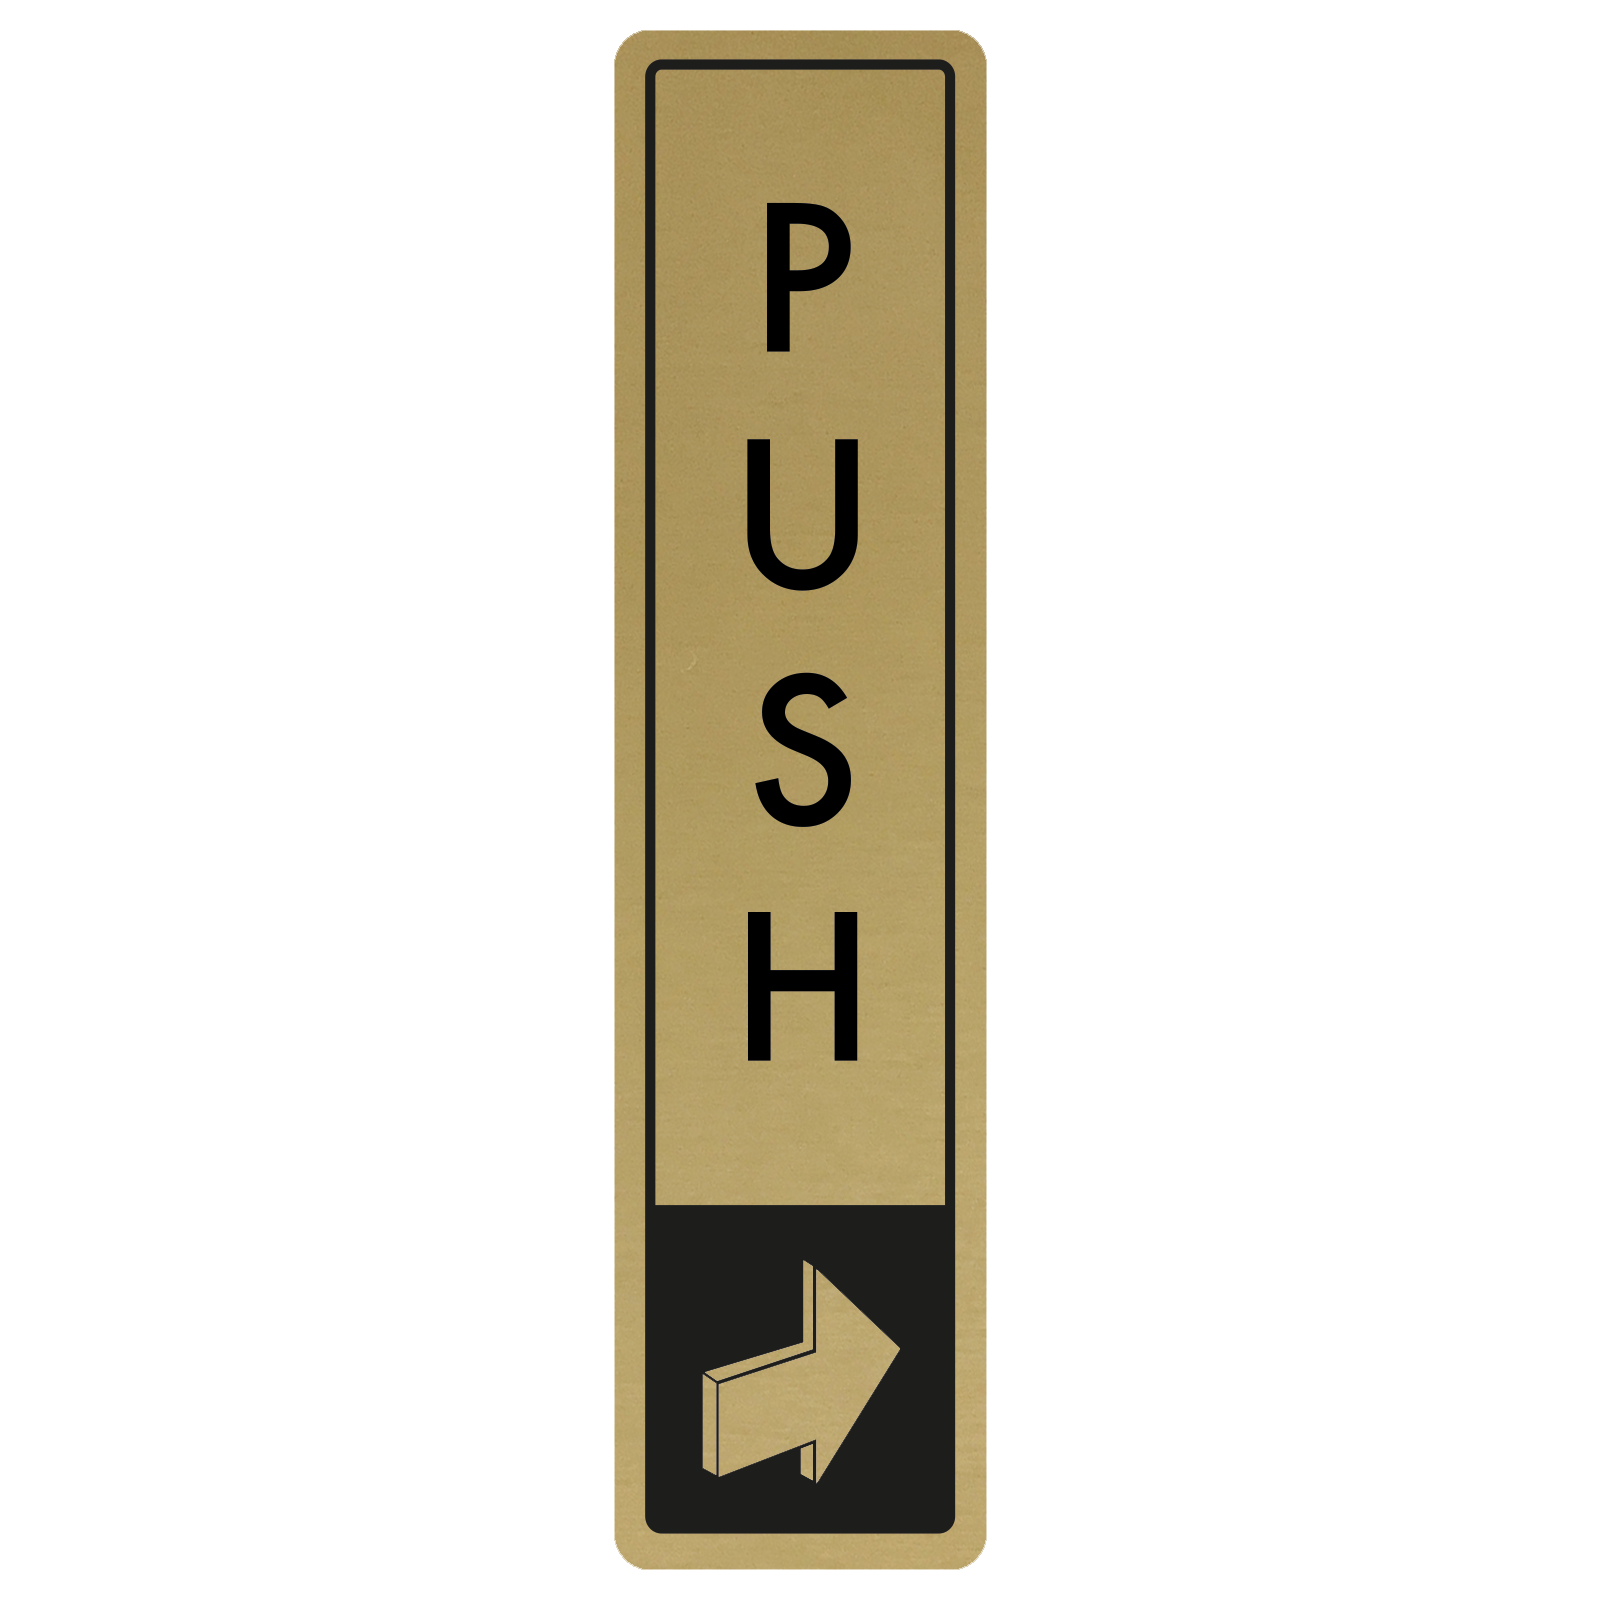 Vertical Push Door Sign - Black on Gold